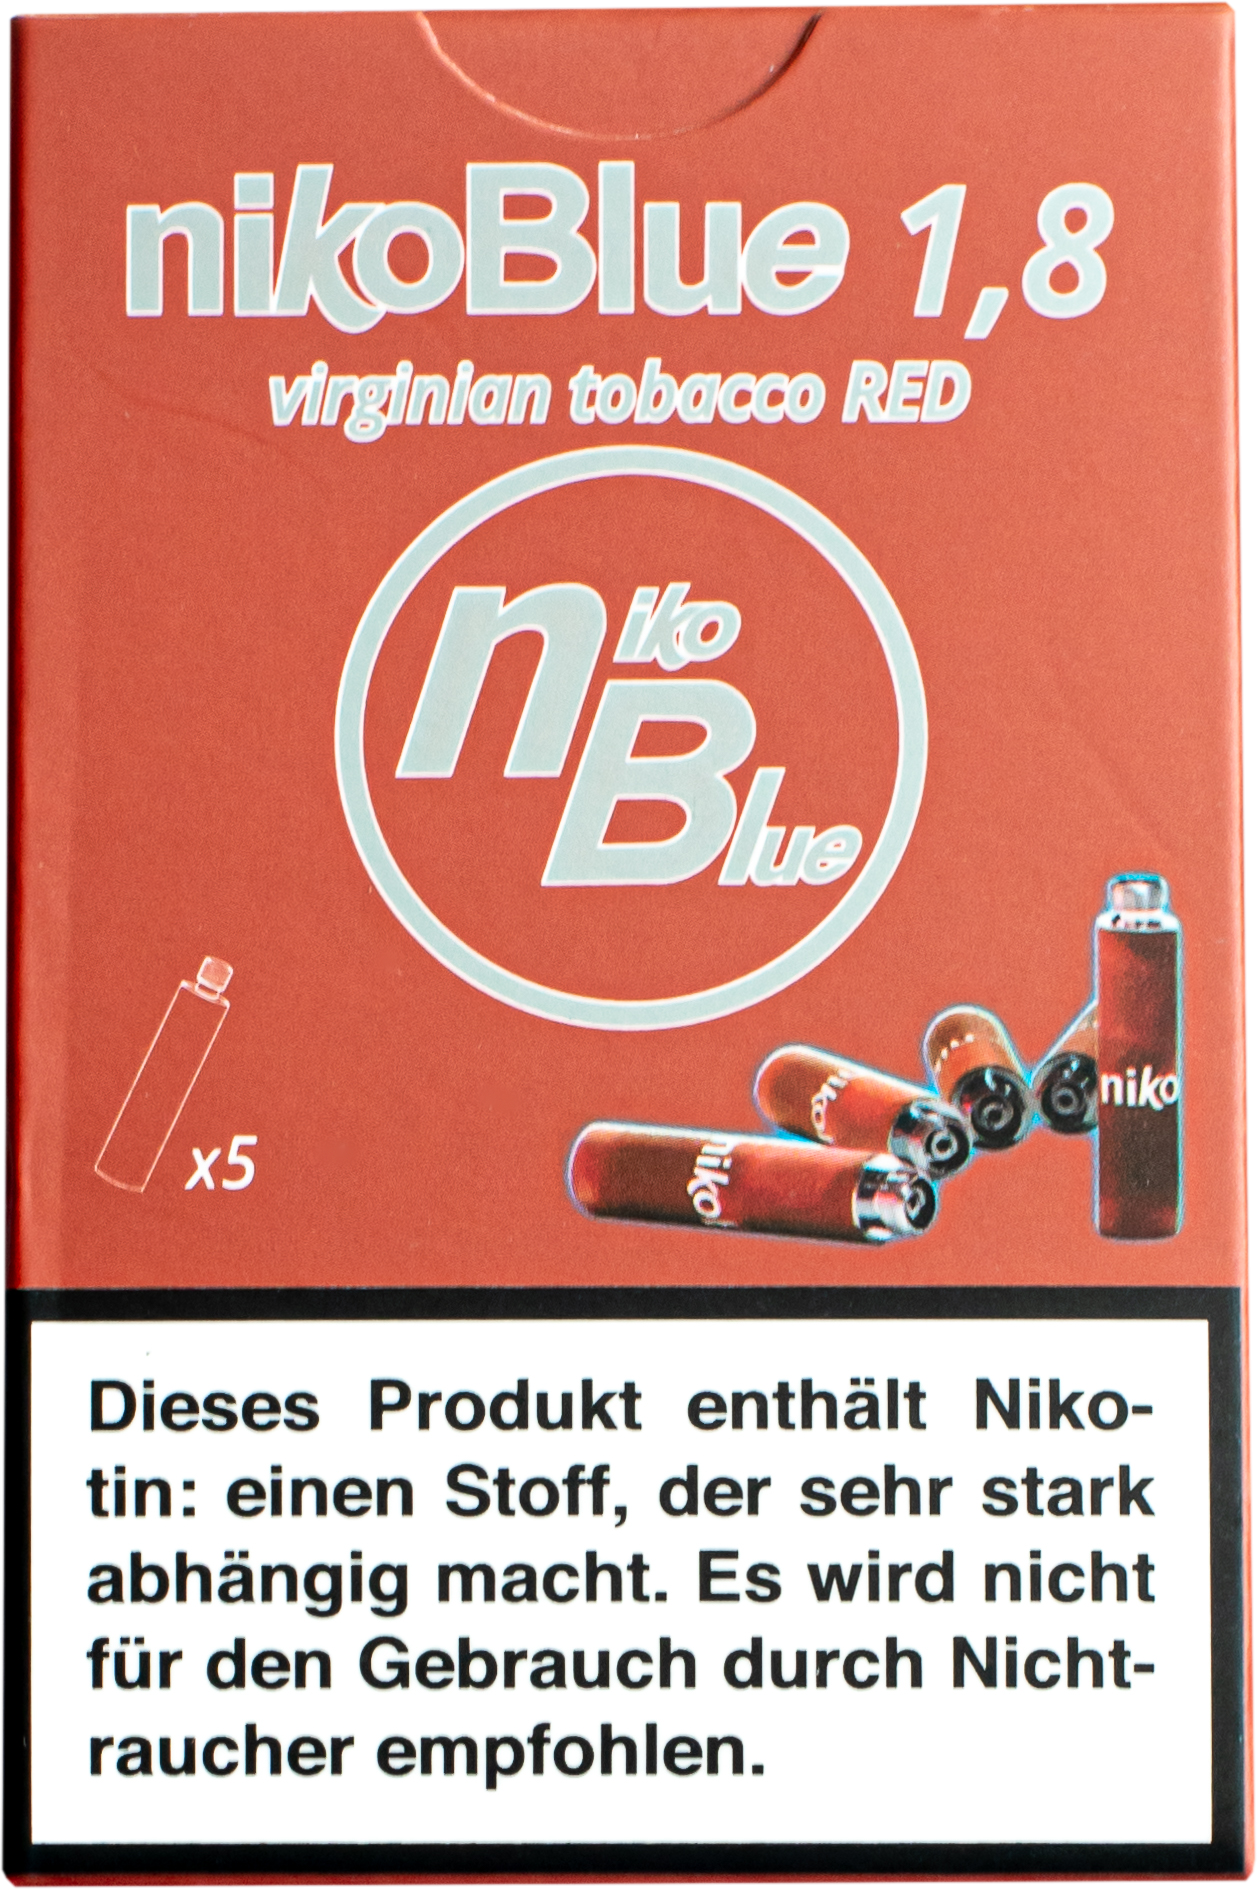 nikoBlue refill red 1.8% Nikotin